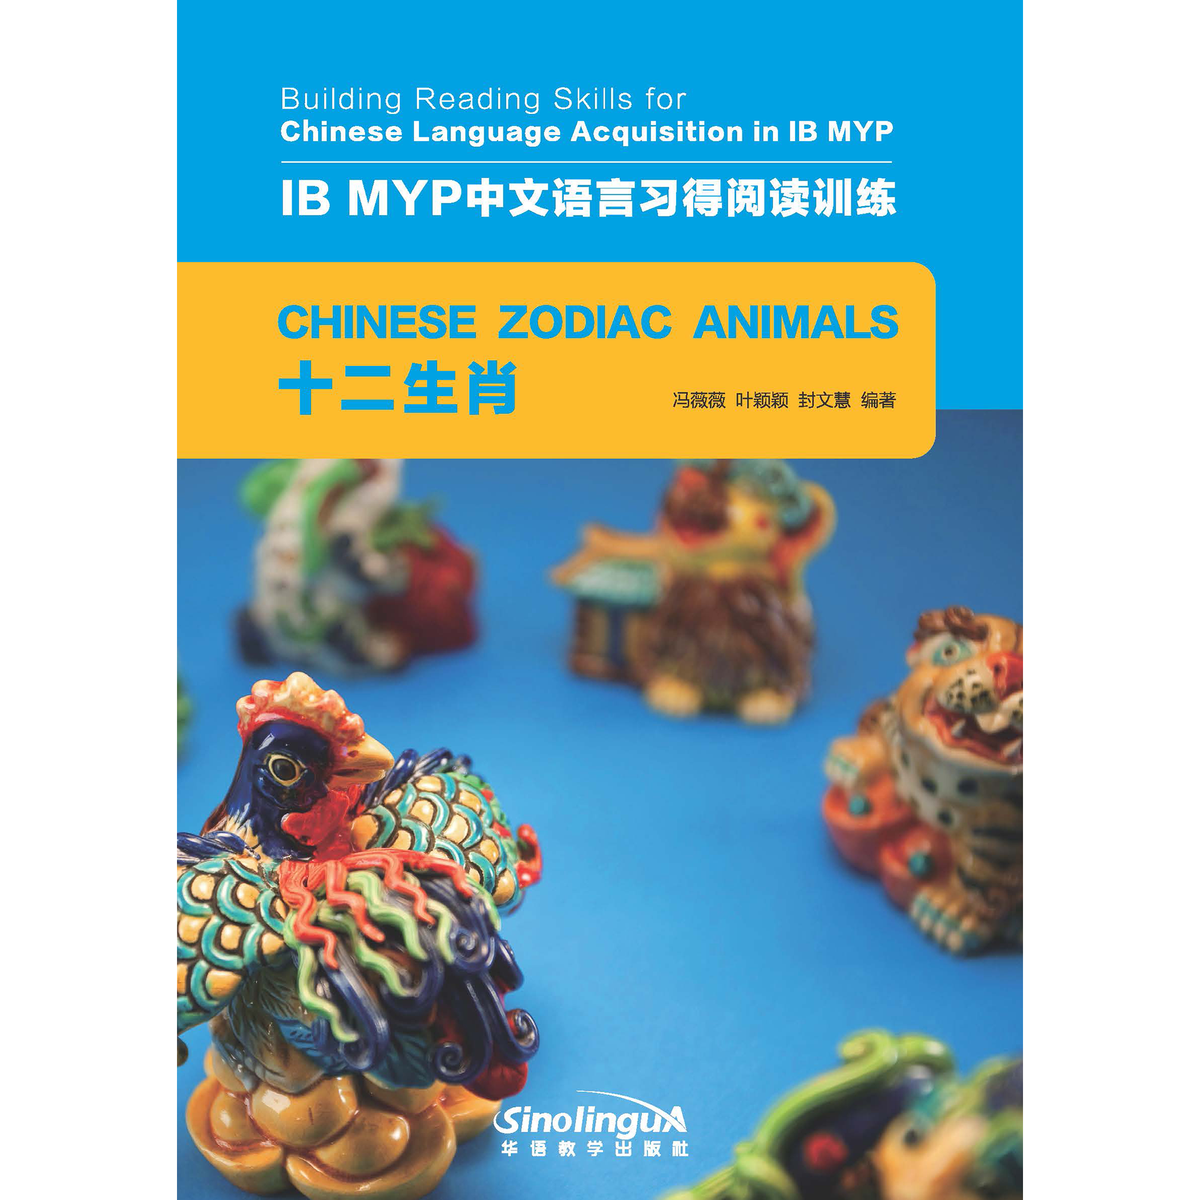 IB MYP中文语言习得阅读训练：十二生肖